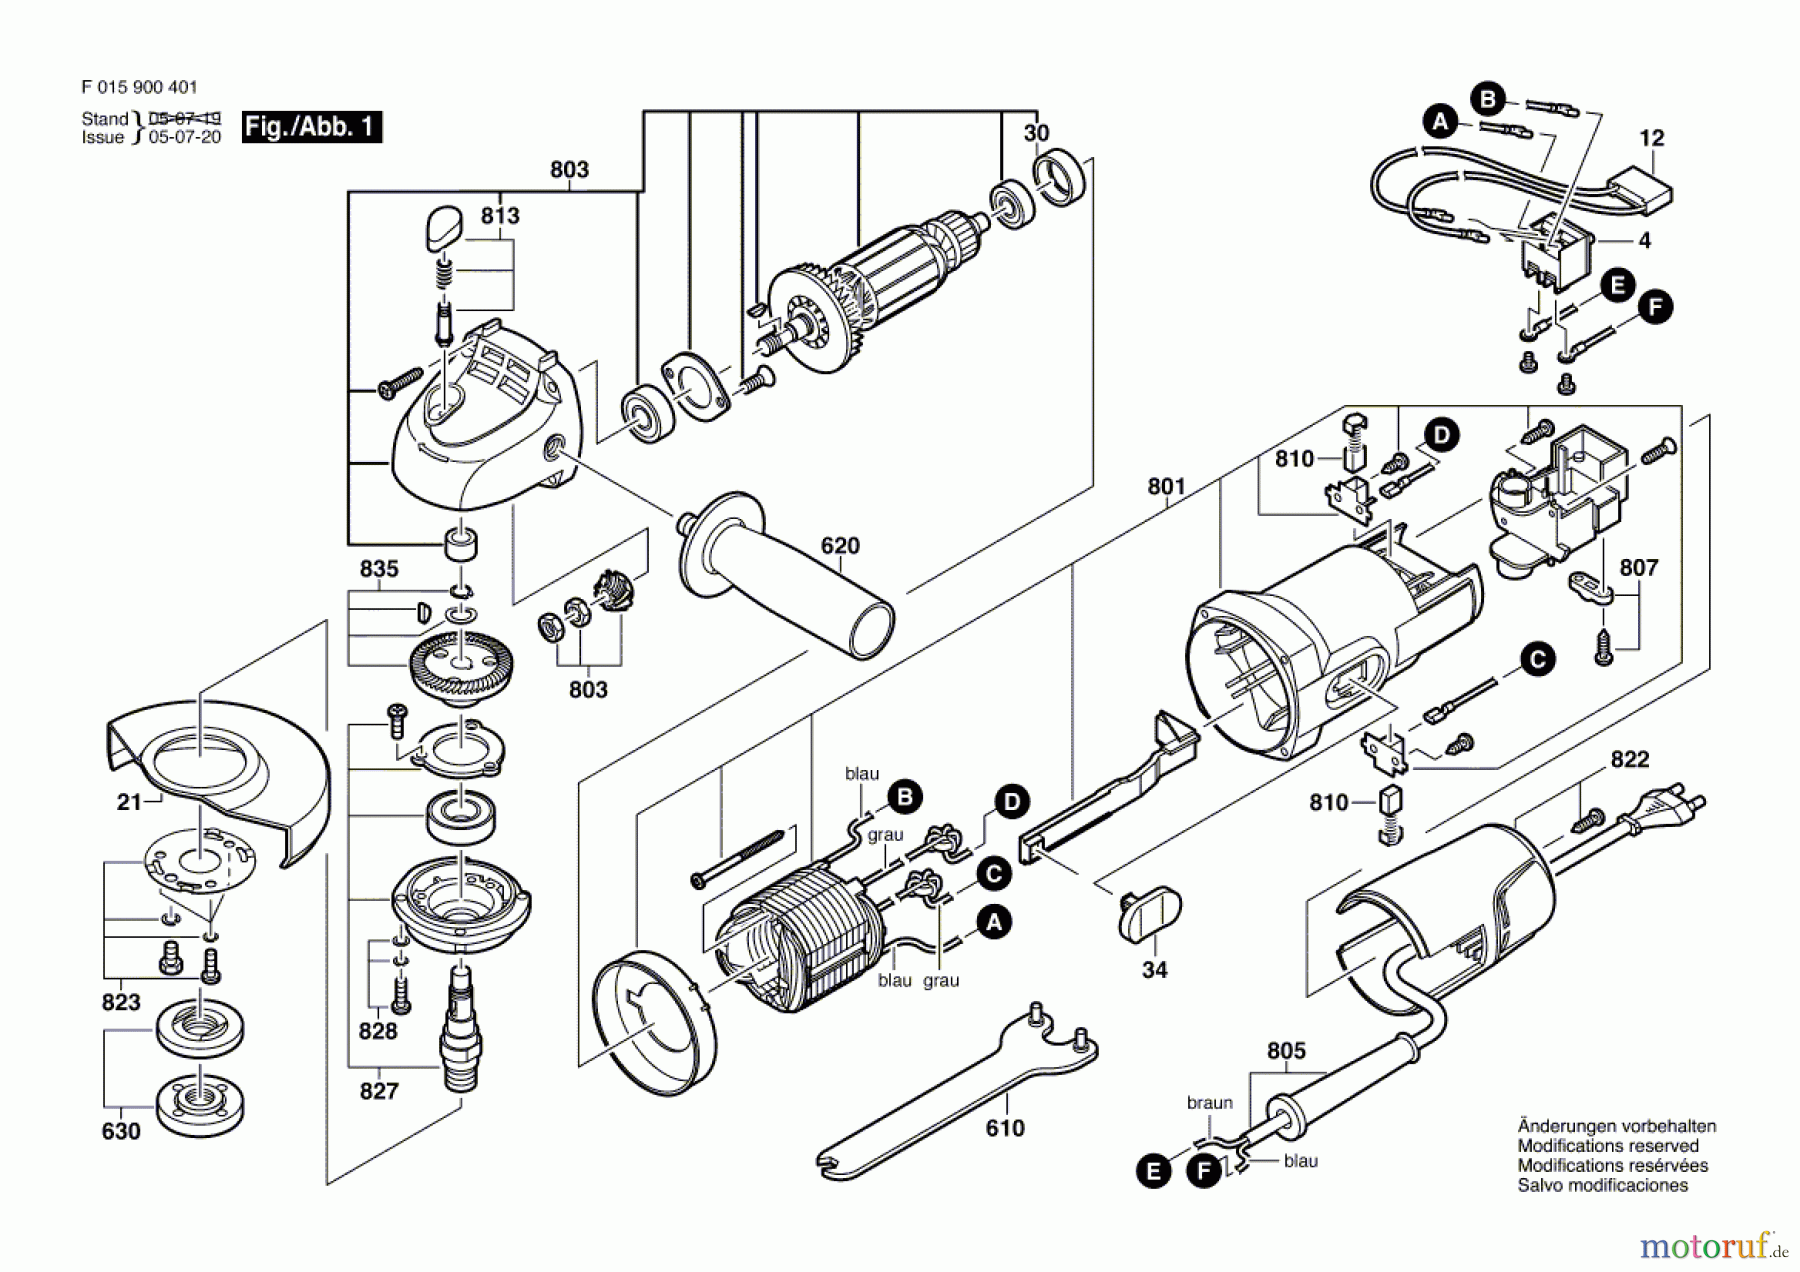  Bosch Werkzeug Winkelschleifer 9004 Seite 1